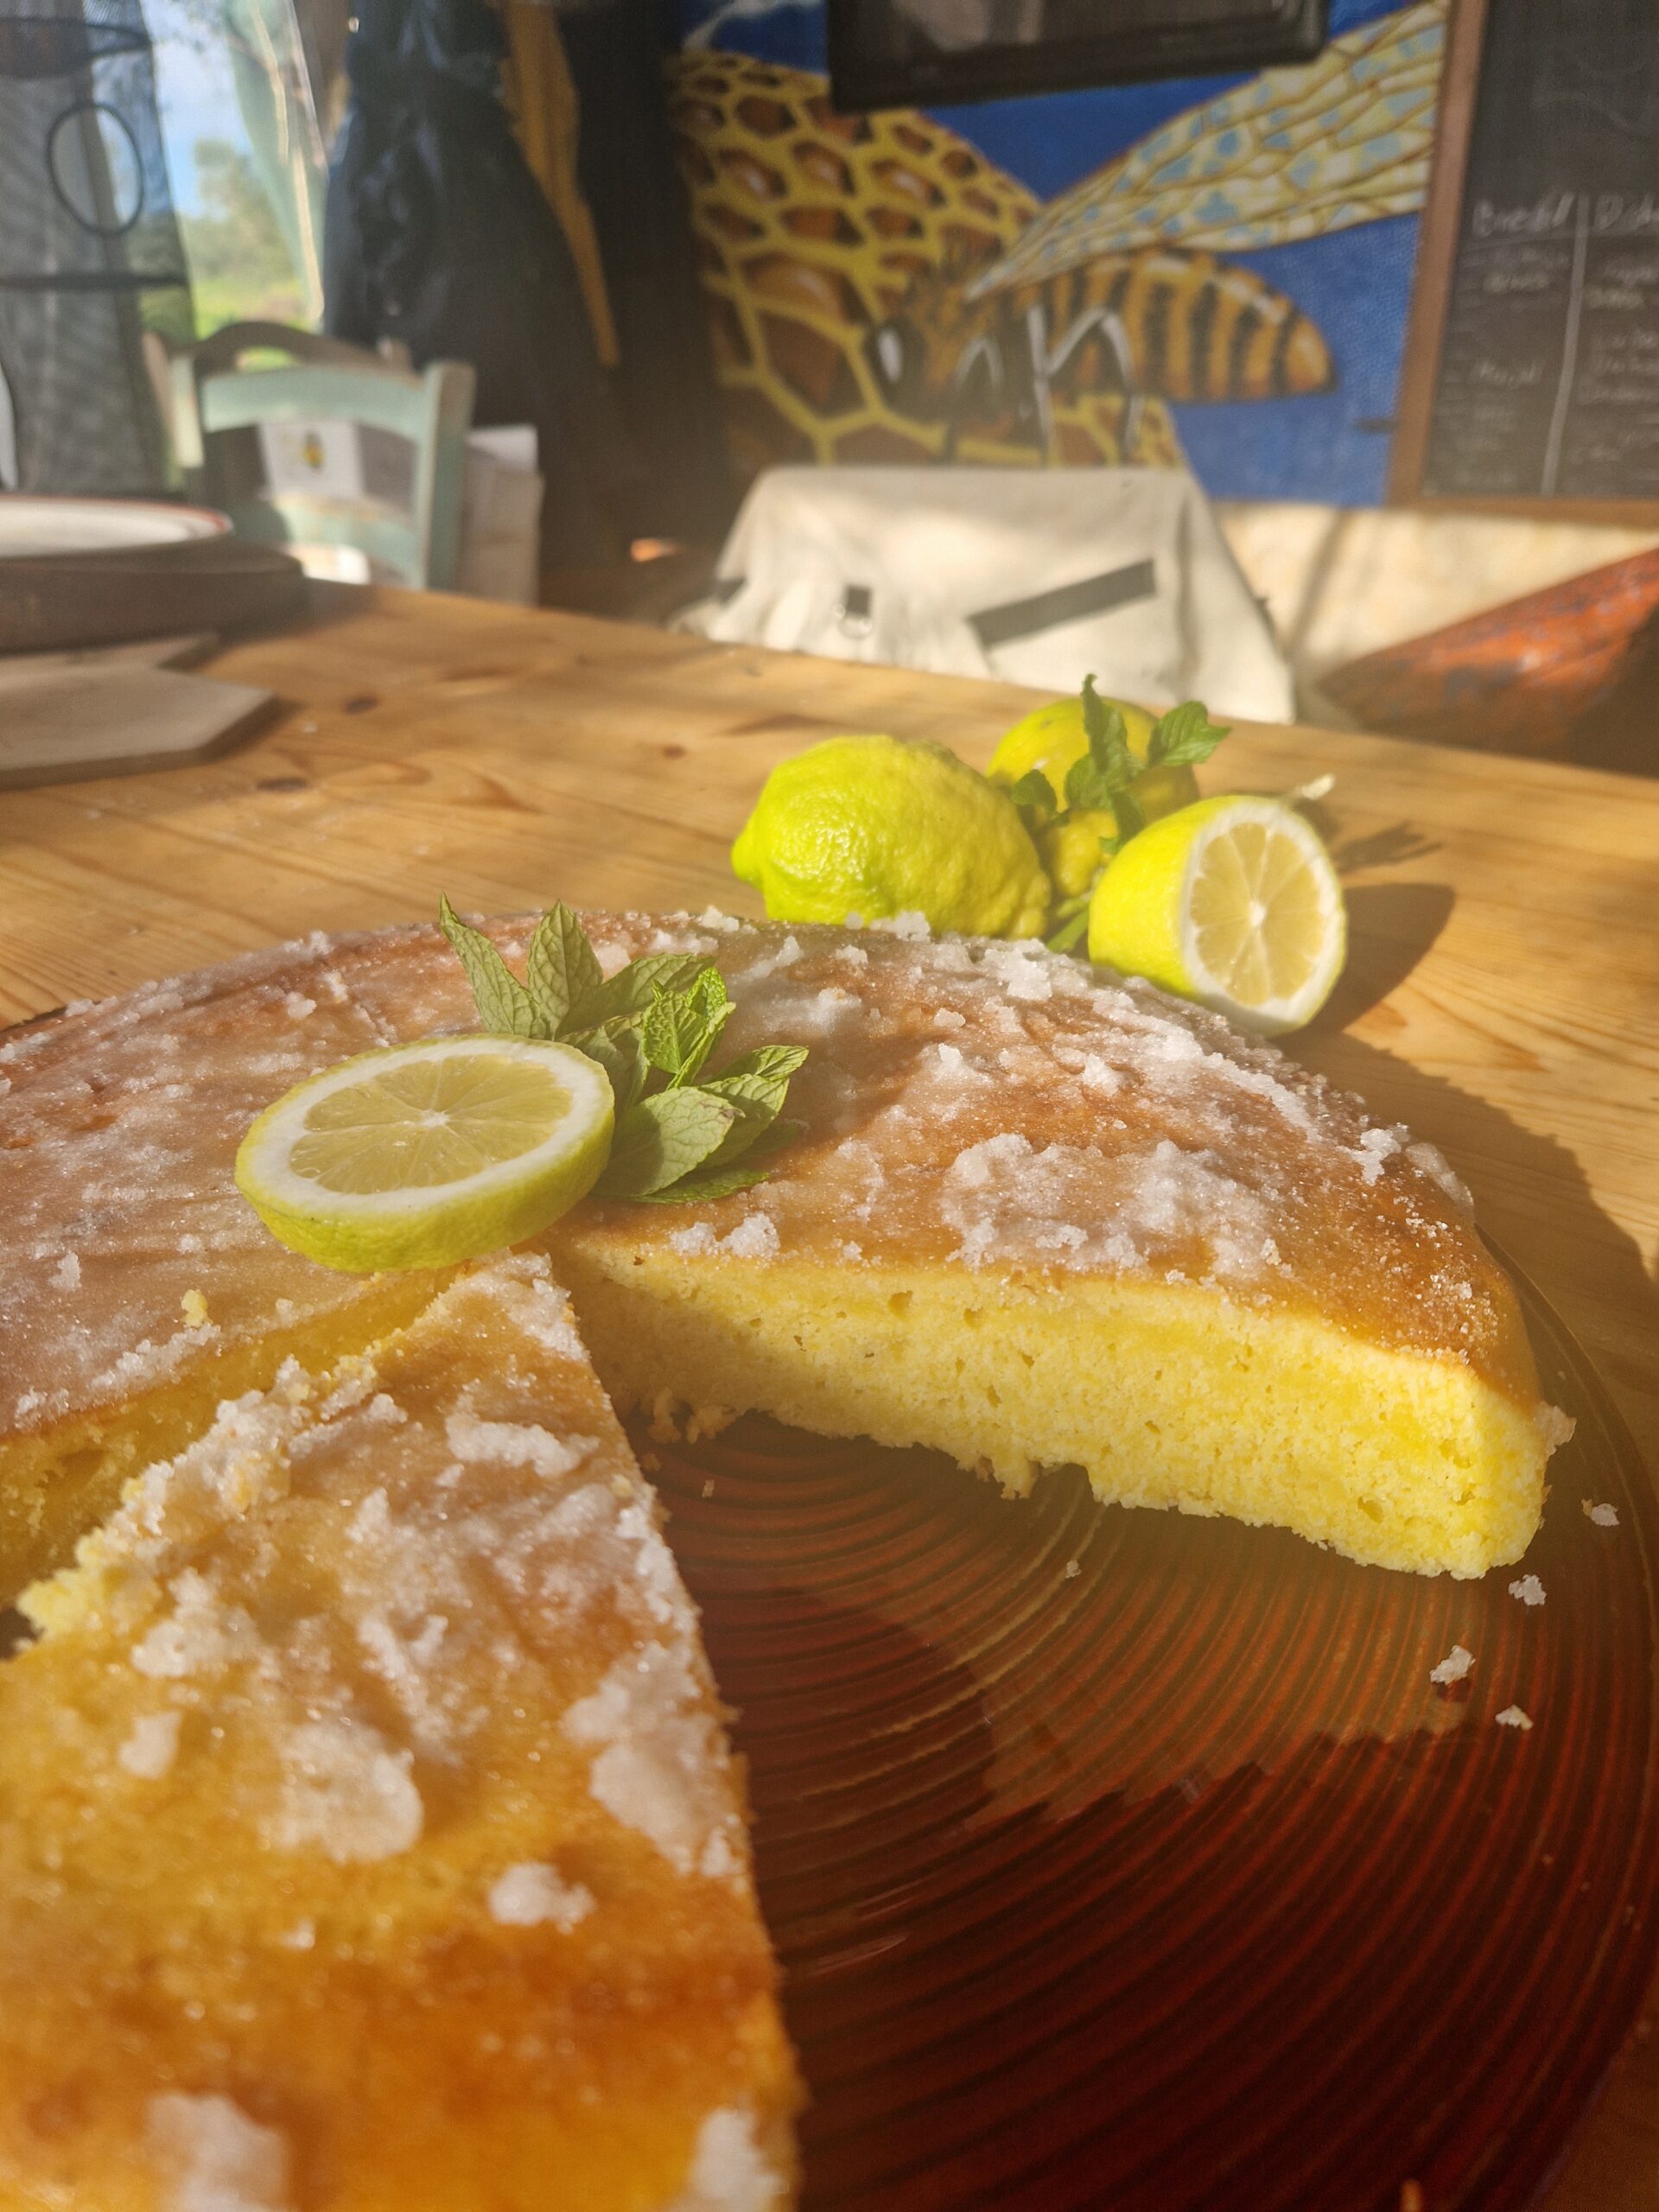 Marjal’s lemon cake